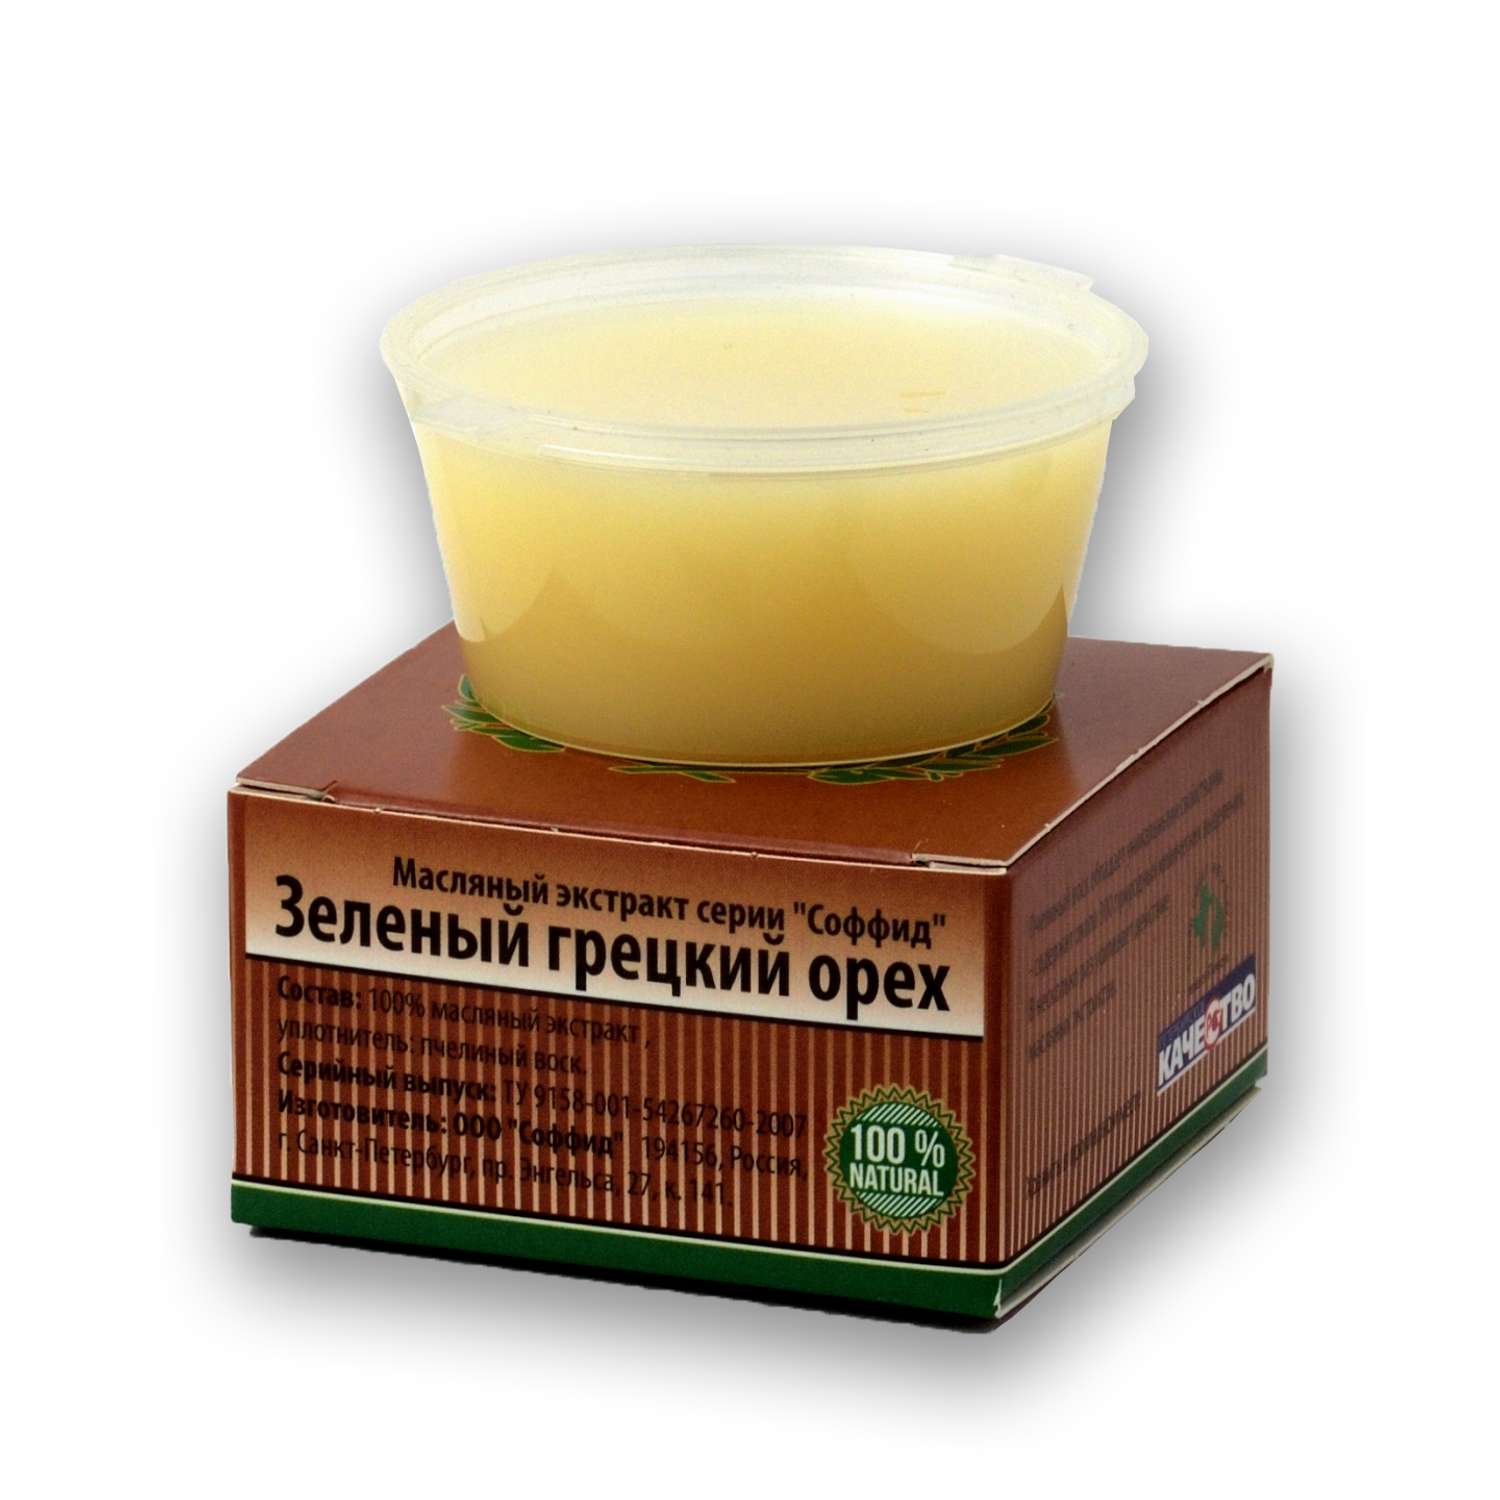 Масляный экстракт СОФФИД Зелёного грецкого ореха 50 г - фото 1